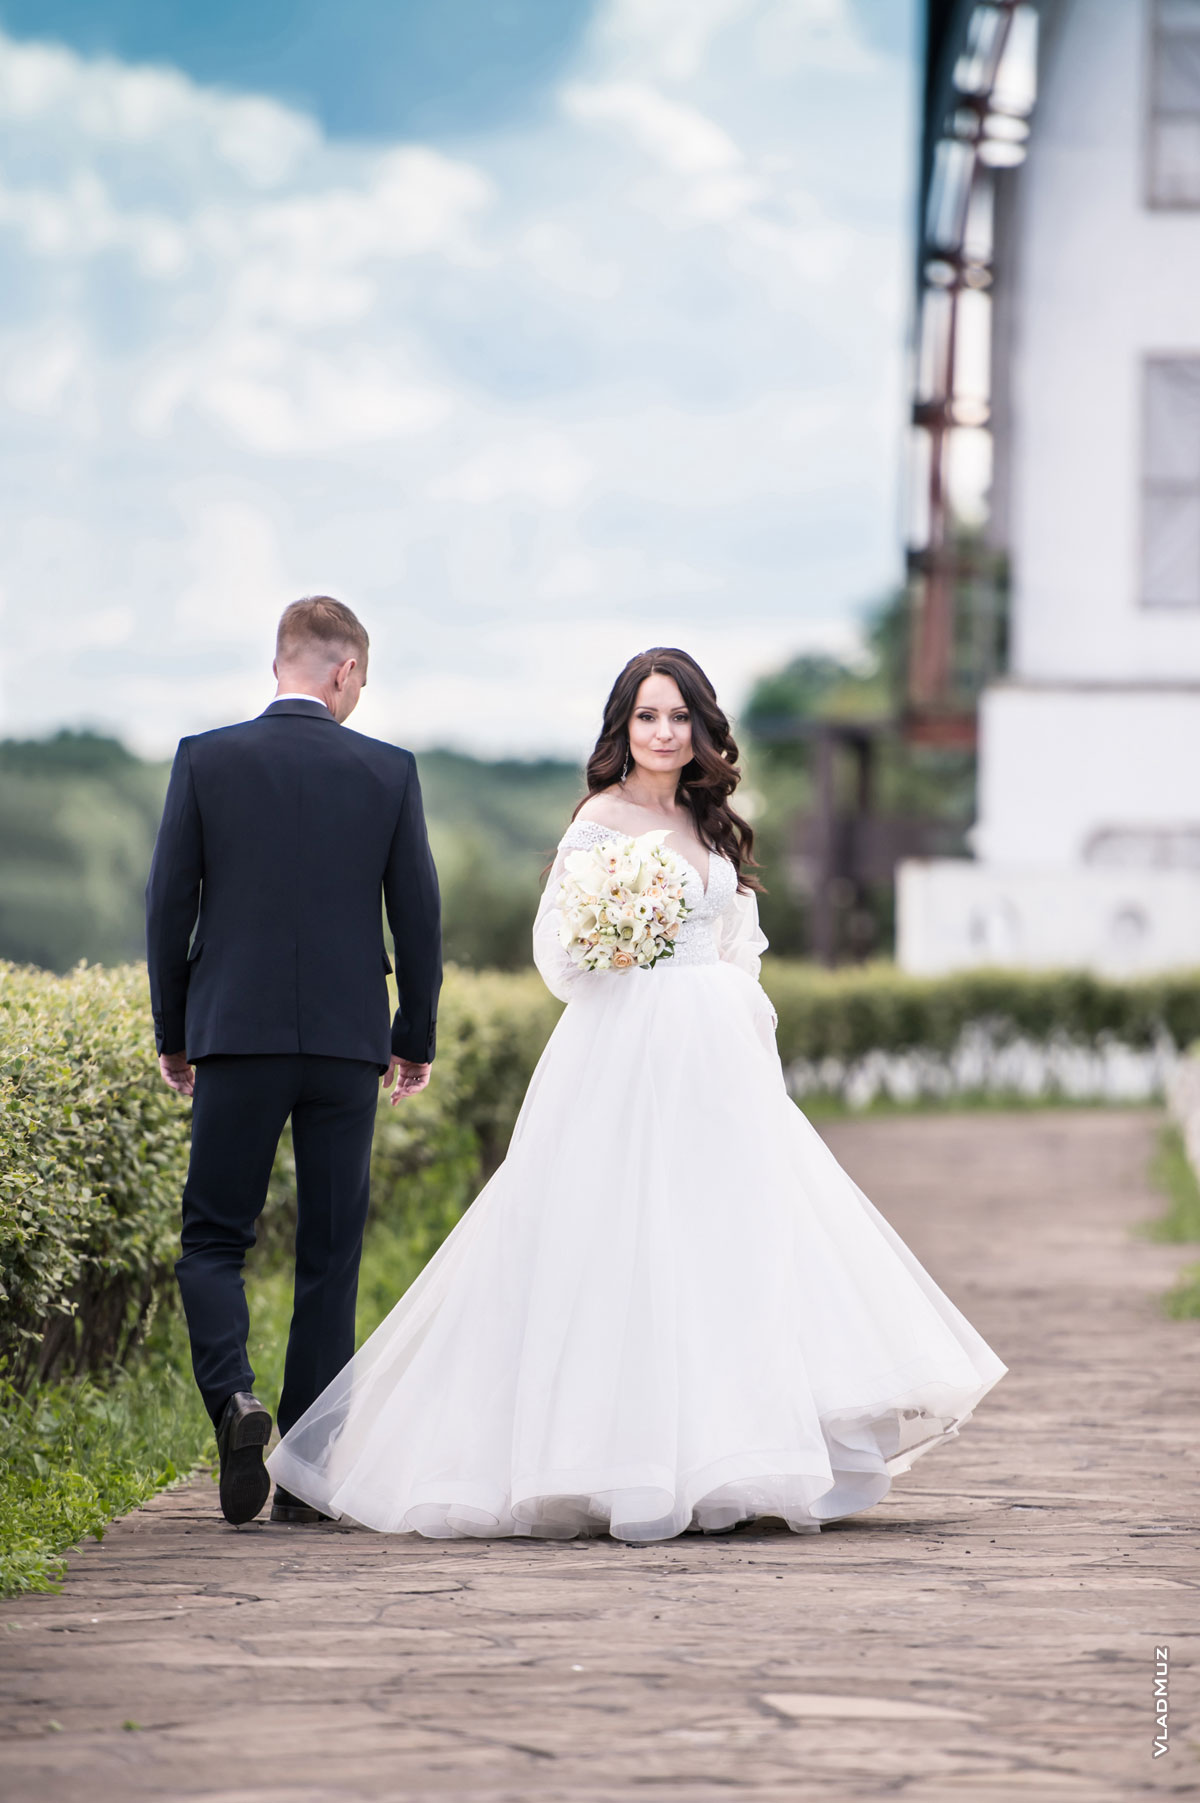 Свадебный штамп во время свадебной прогулки: молодожены идут впереди, невеста оборачивается назад